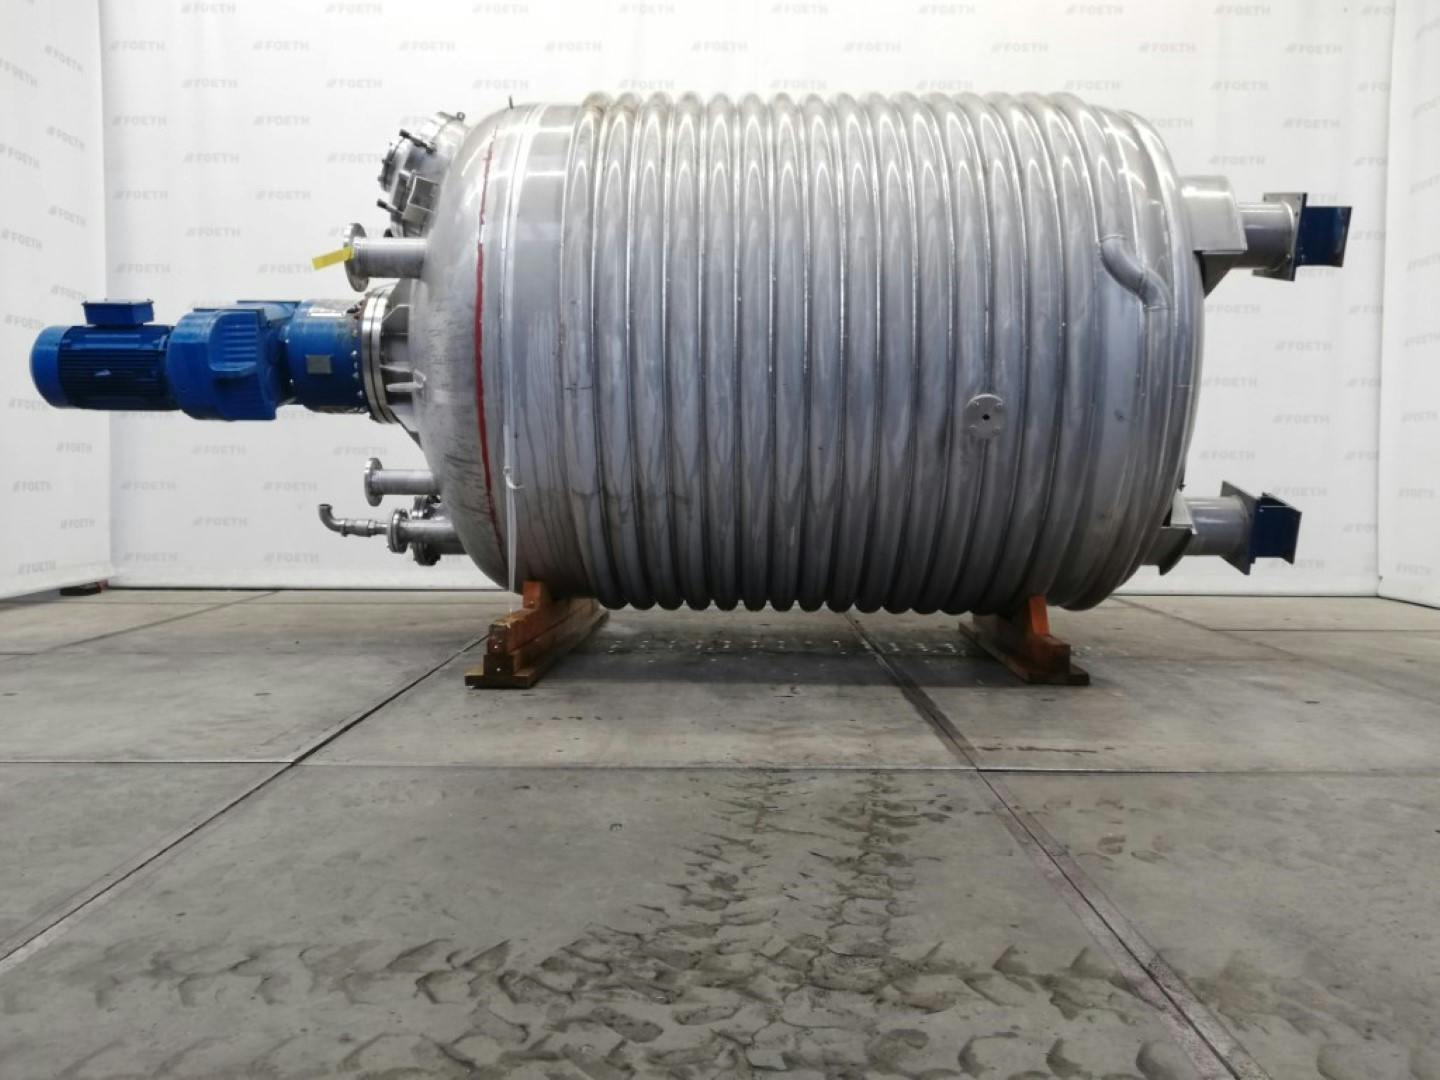 Rudert Edelstahl-Technik Reaktor 10m3 - Reactor de acero inoxidable